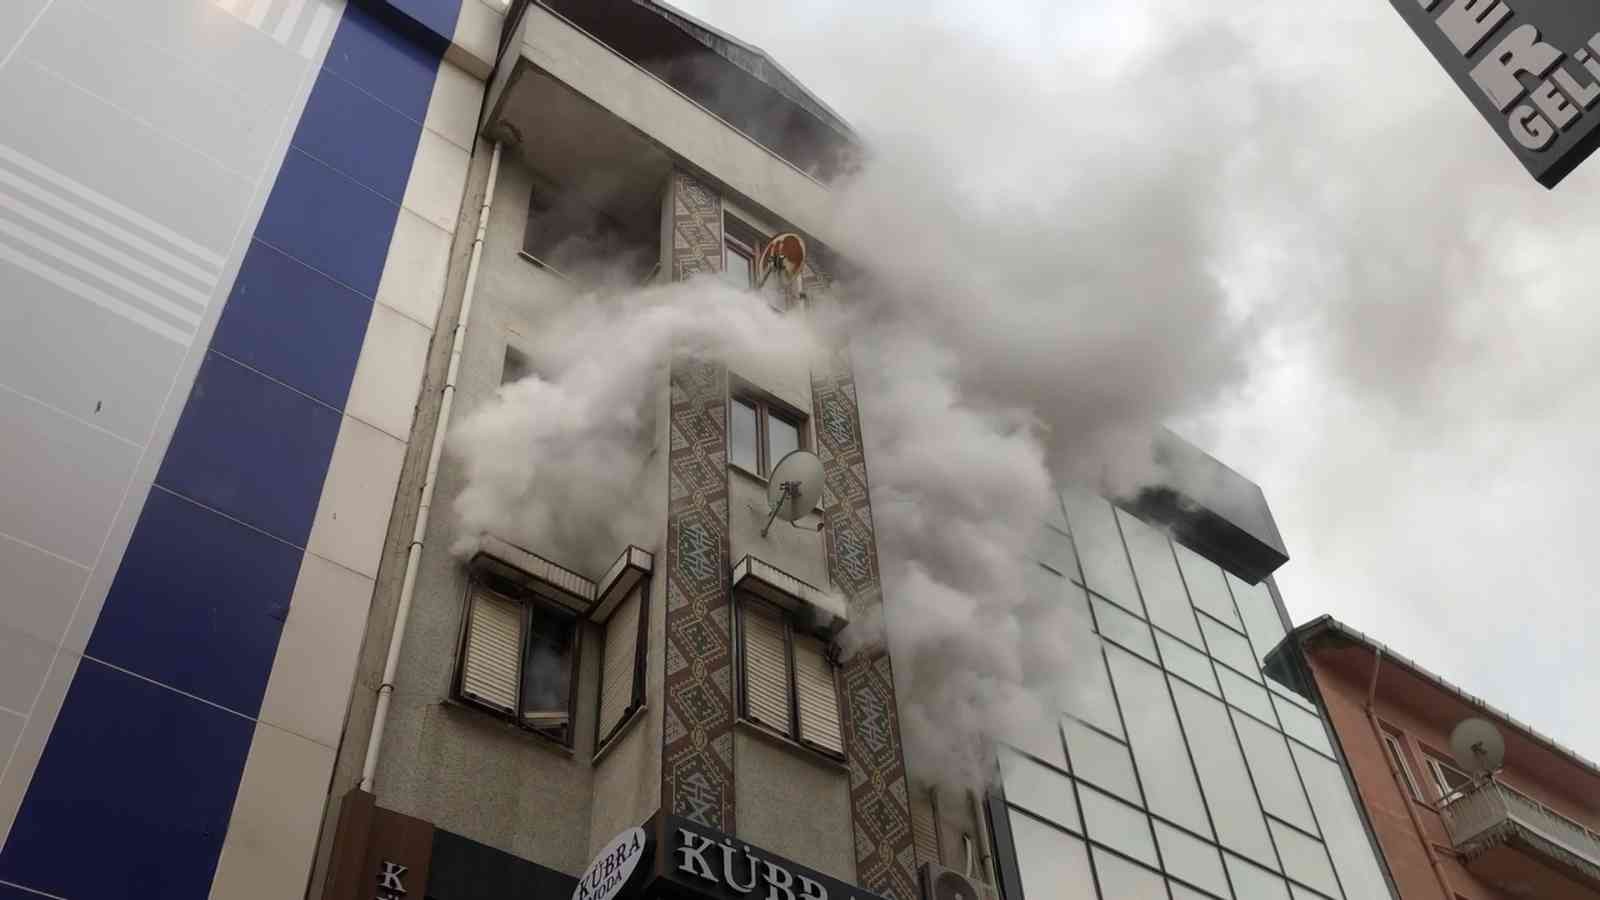 Karşı binadaki yangına aldırış etmeden sıva yapmaya devam ettiler #istanbul